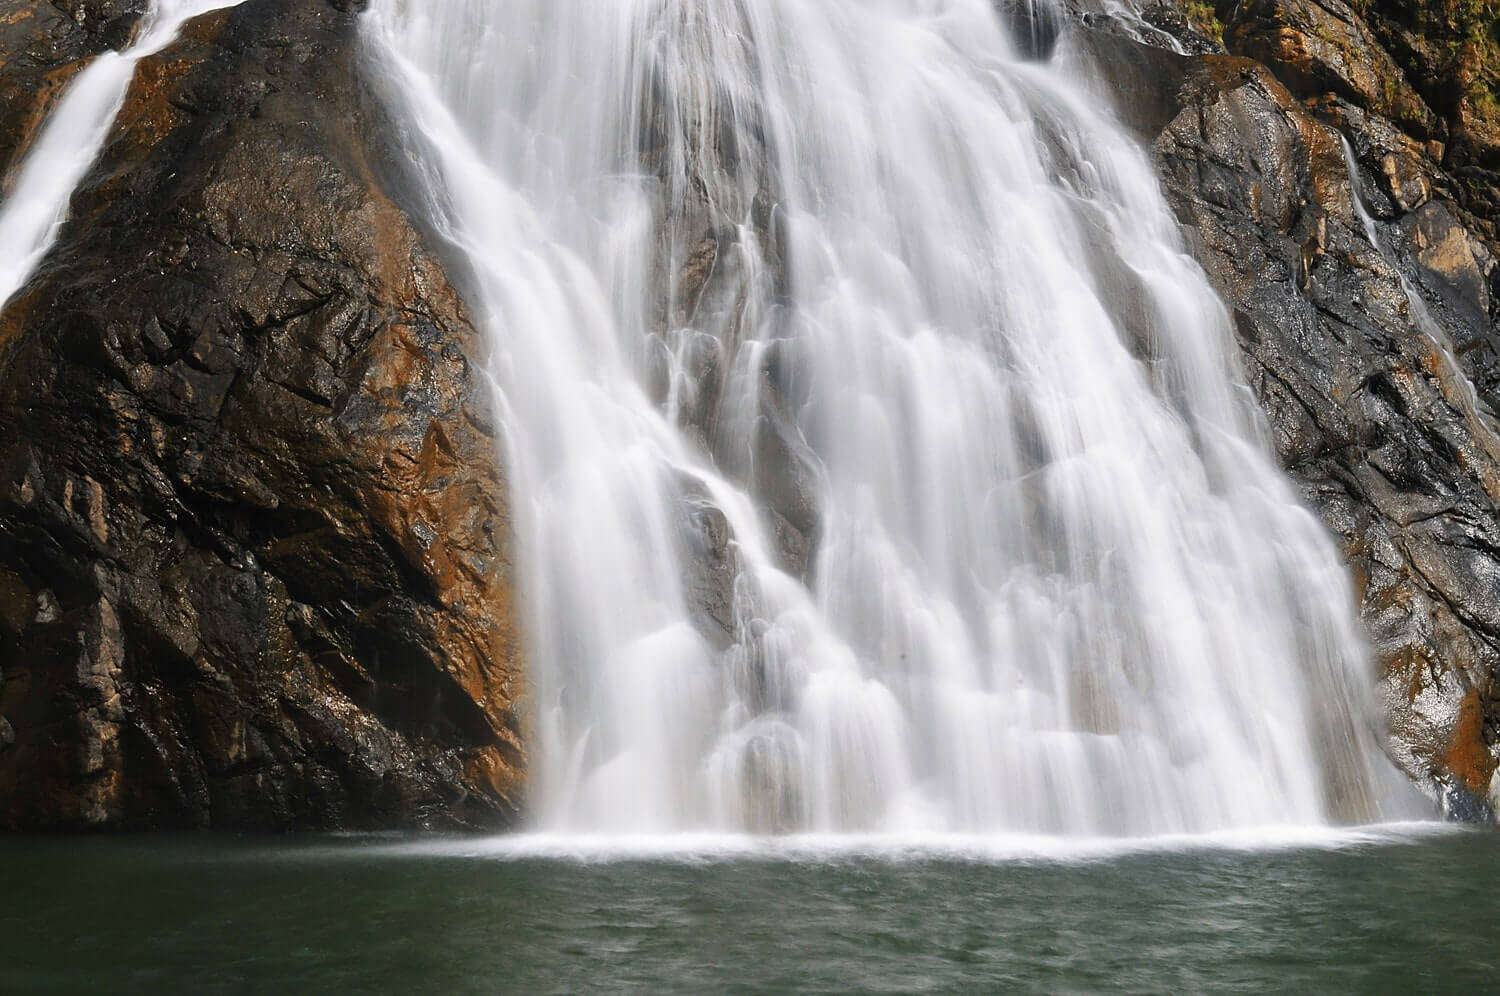 a beautiful waterfall in Goa